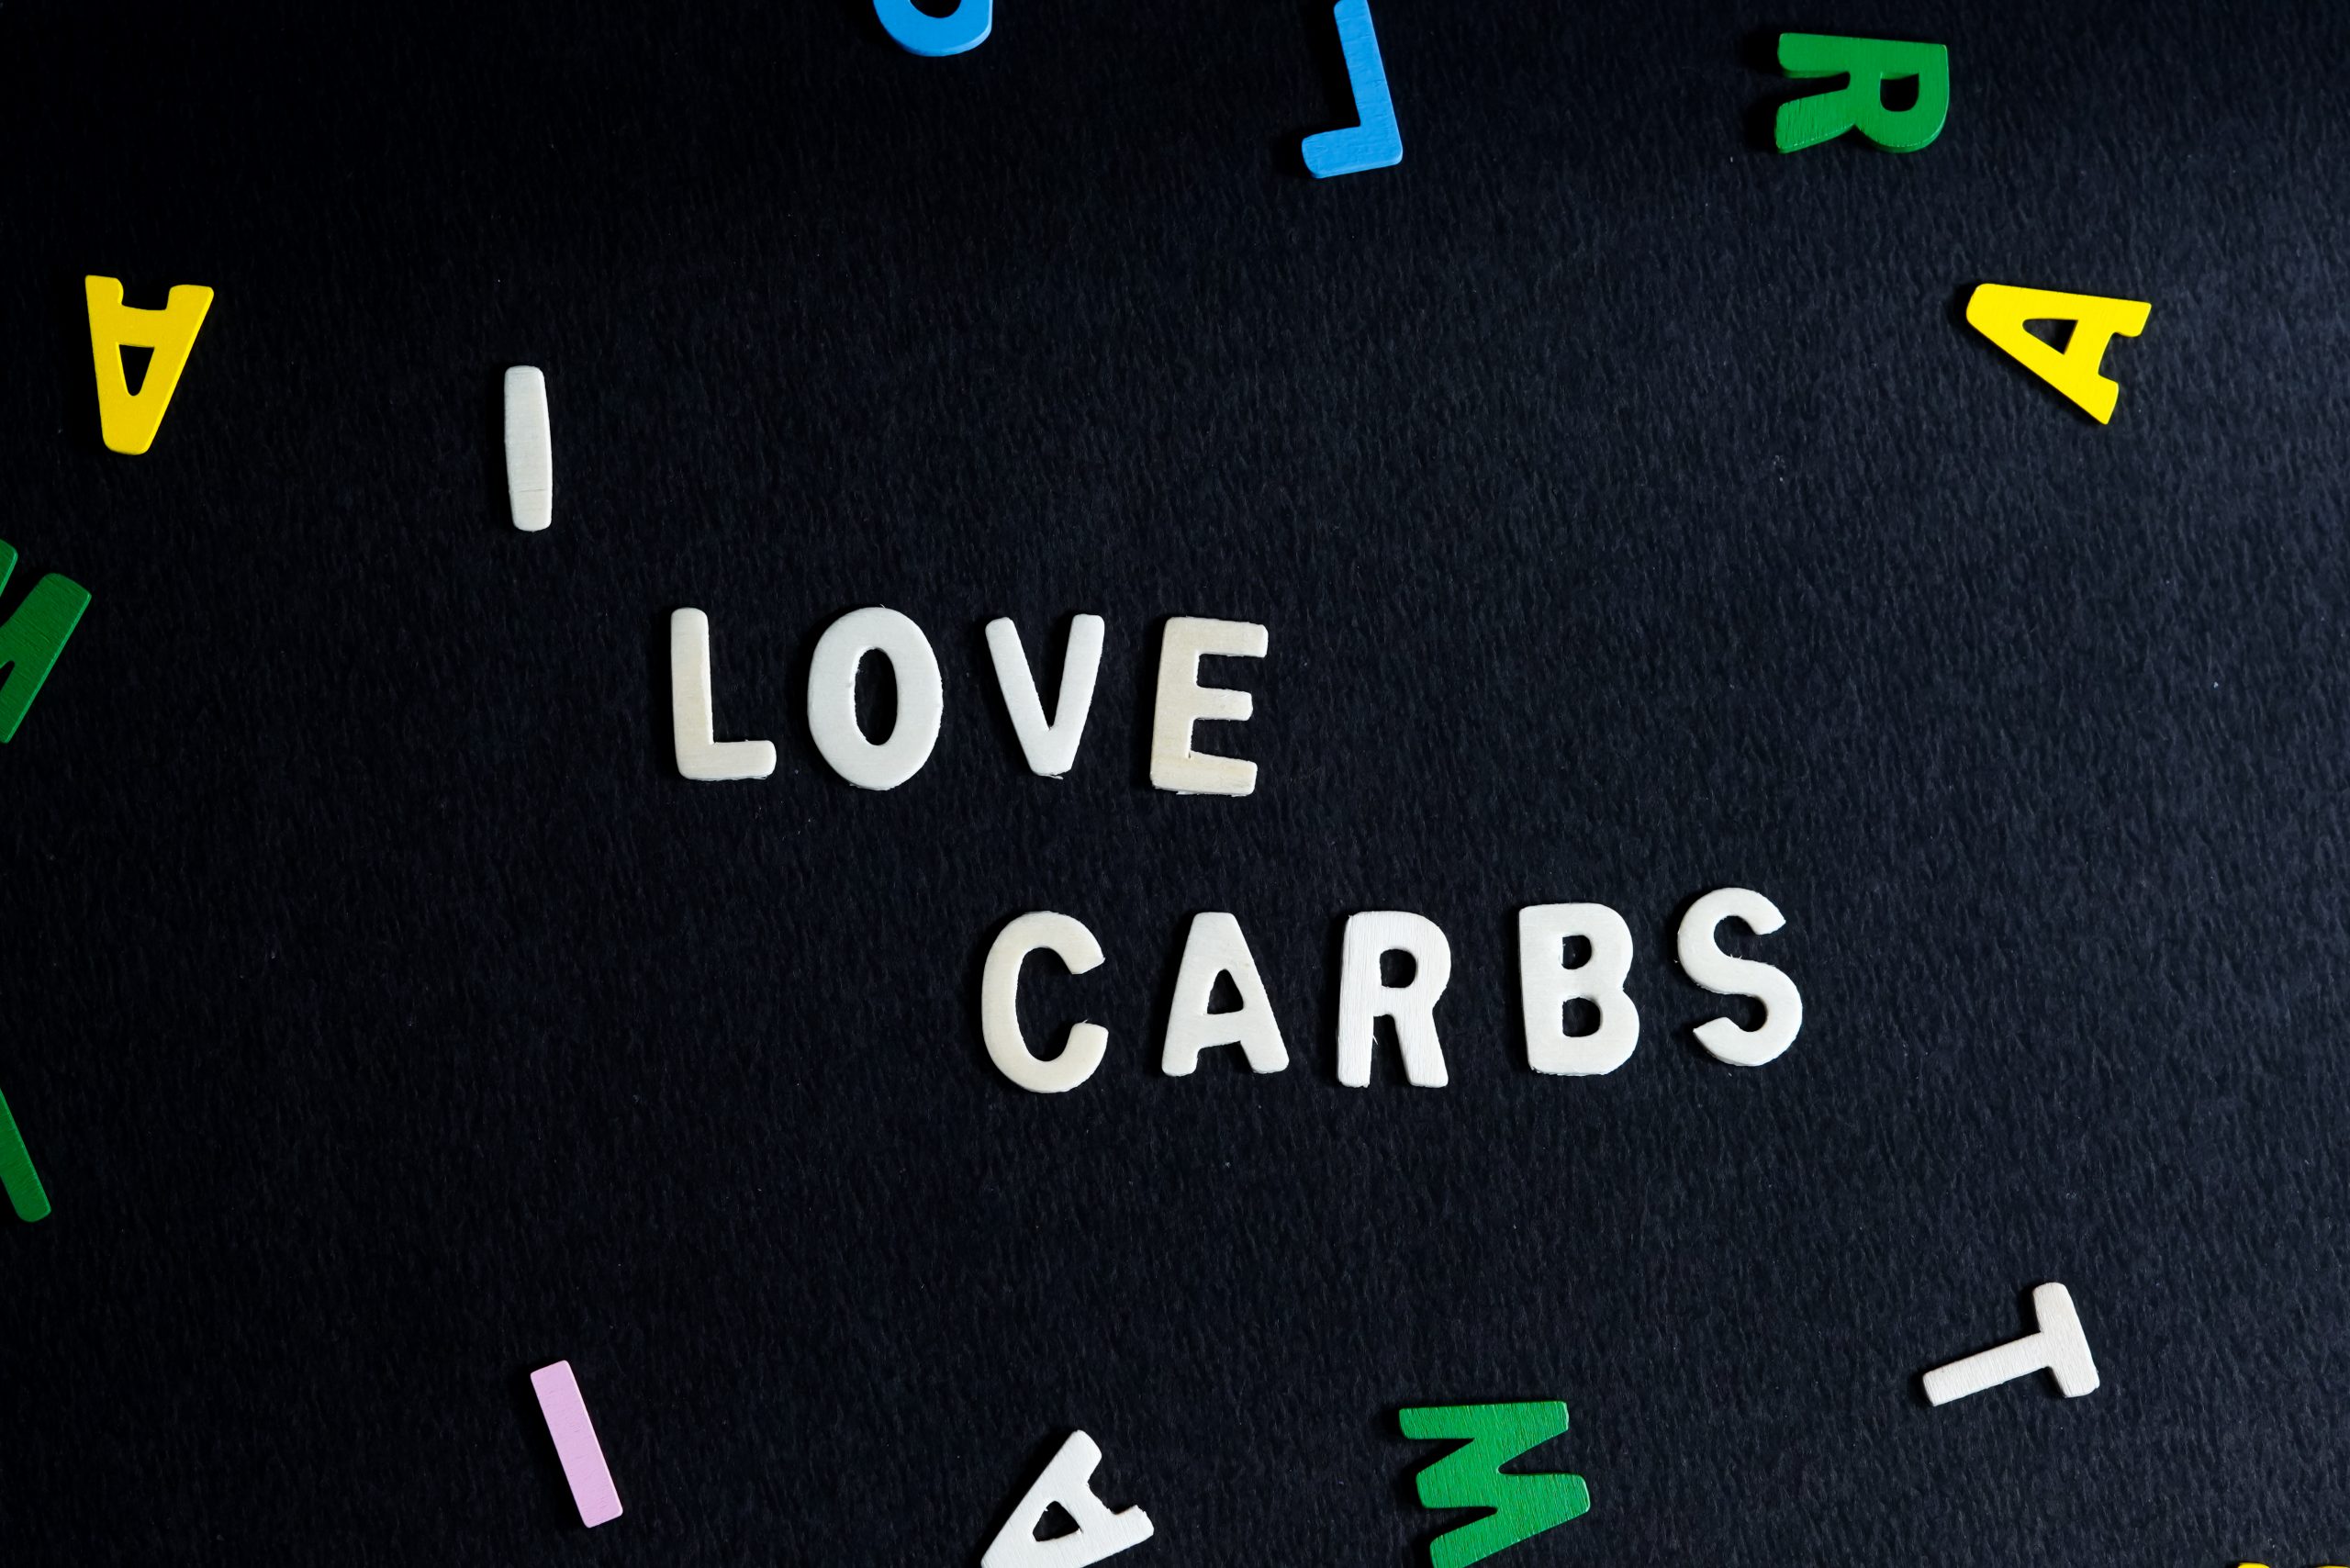 I Love carbs